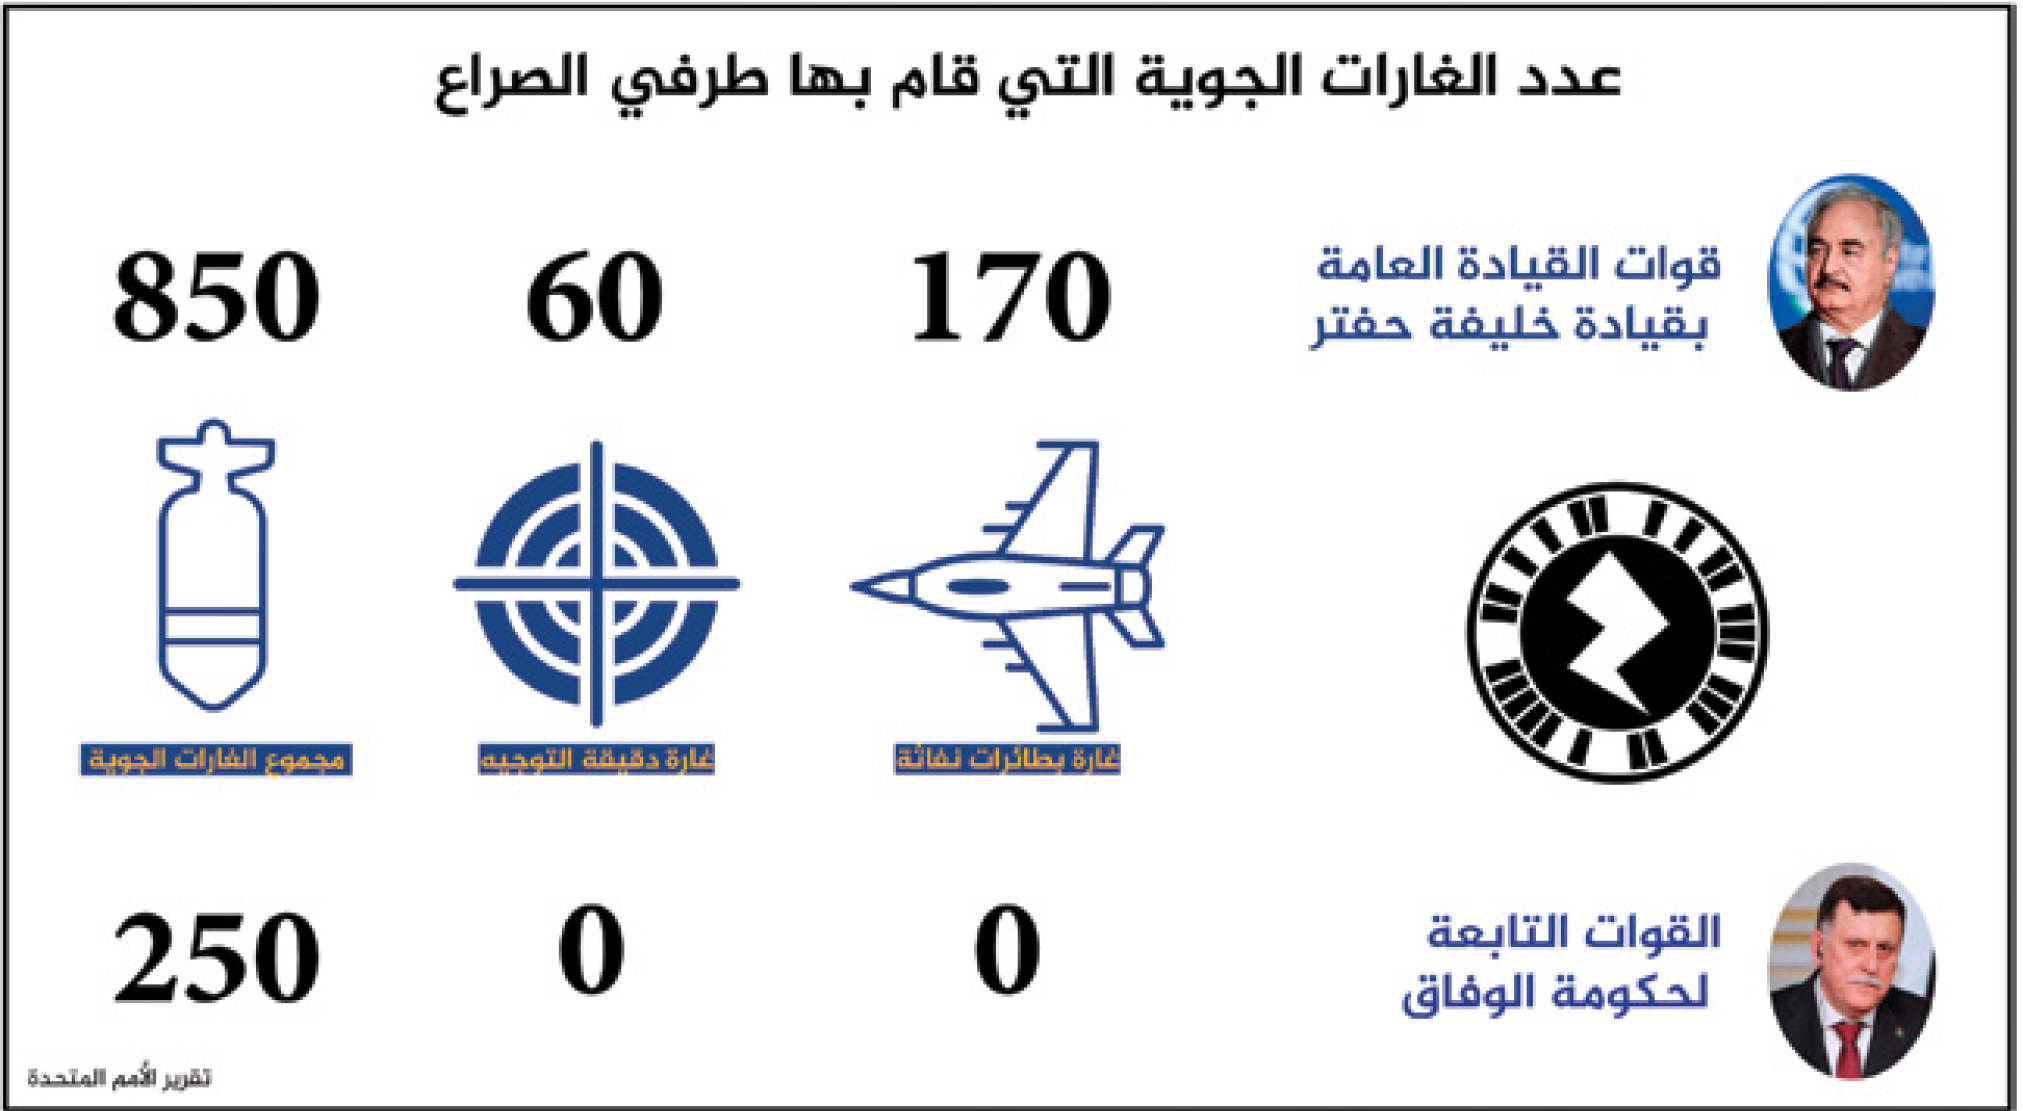 السياسات والتشريعات المتعلقة بحقوق الإنسان والإنتقال الديمقراطي في ليبيا (تقرير نصف سنوي )